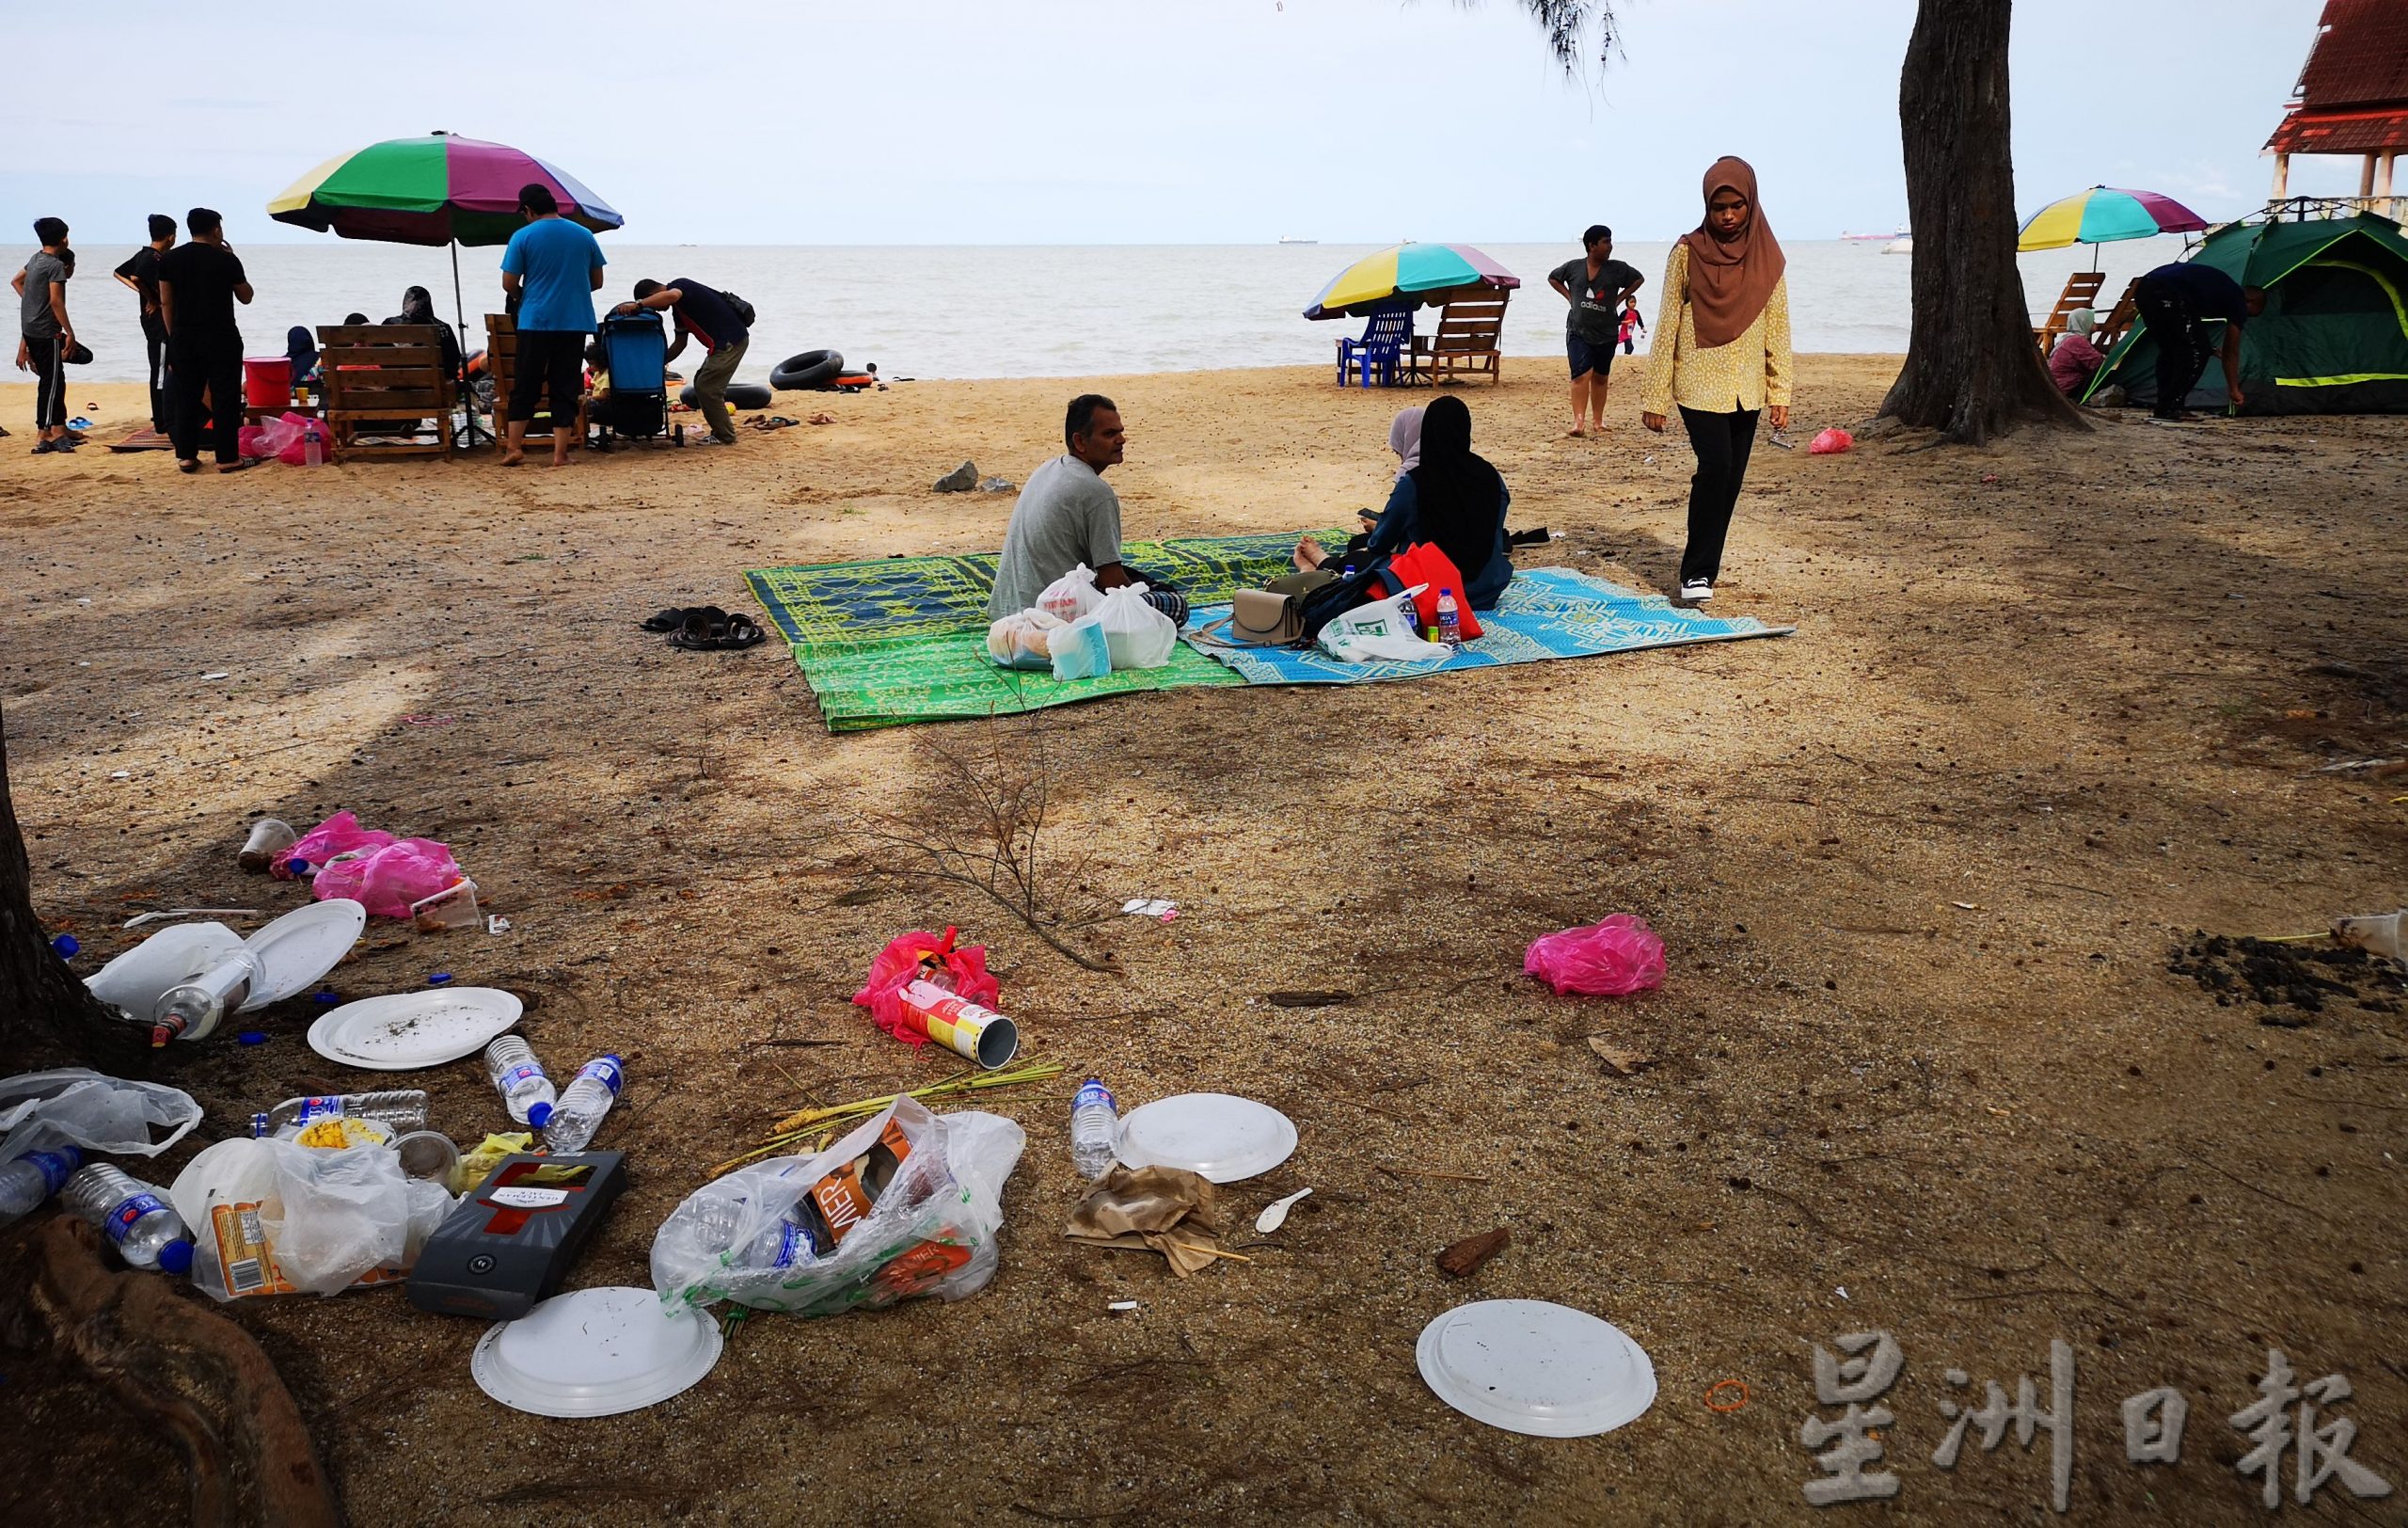 （古城封面主文）5天连假，丹绒比拉拉海边垃圾迎接访客，大煞风景